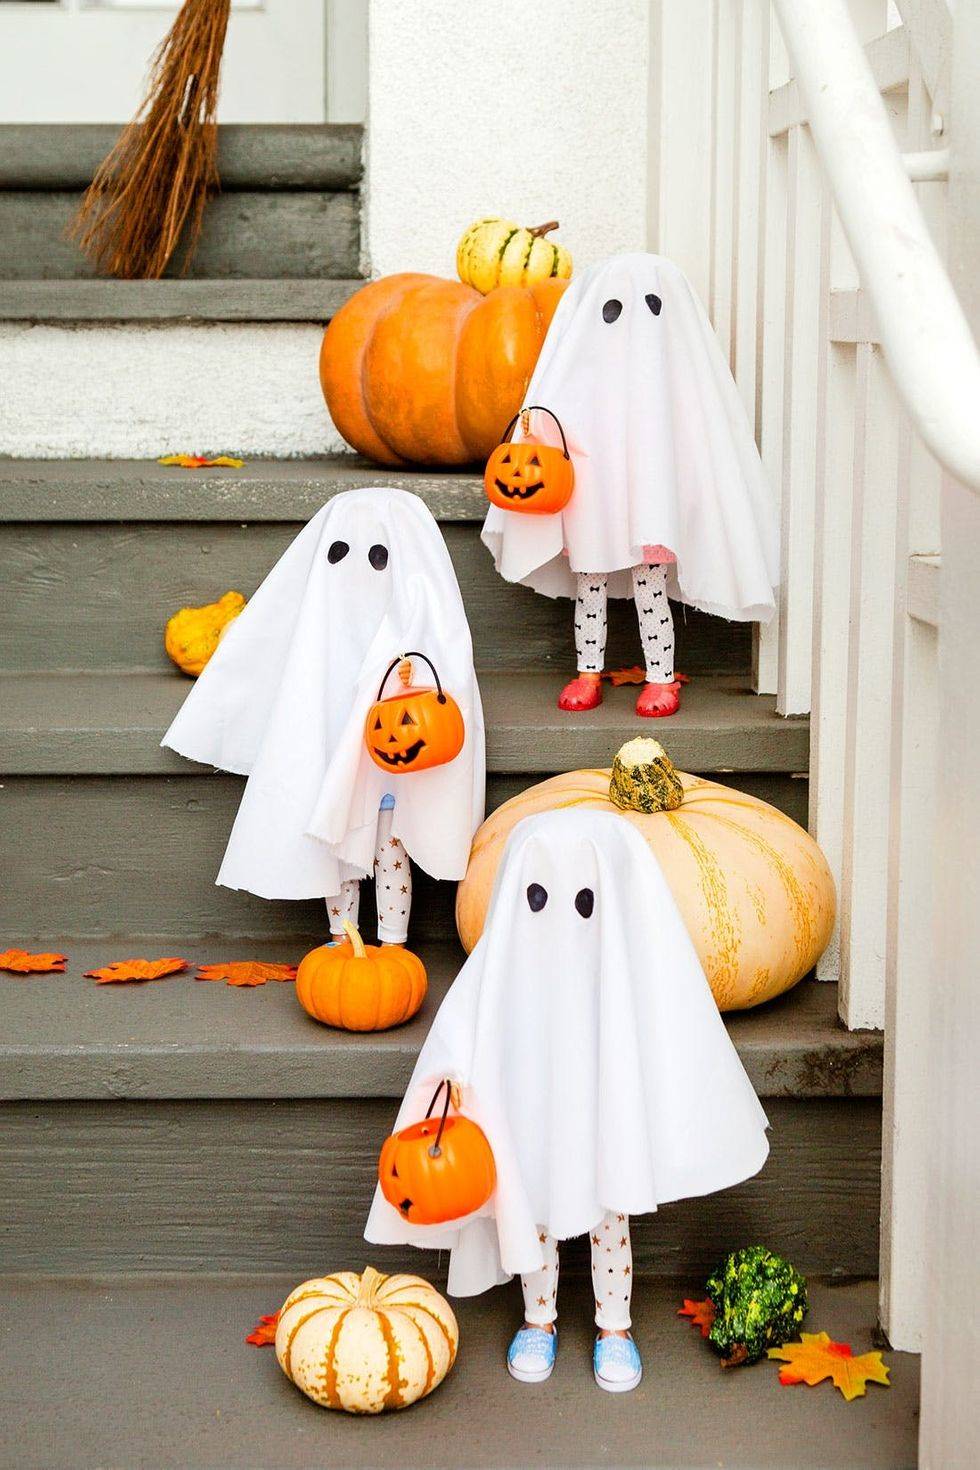 Decoración de Halloween con fantasmas con piernas de muñecos en las escaleras.